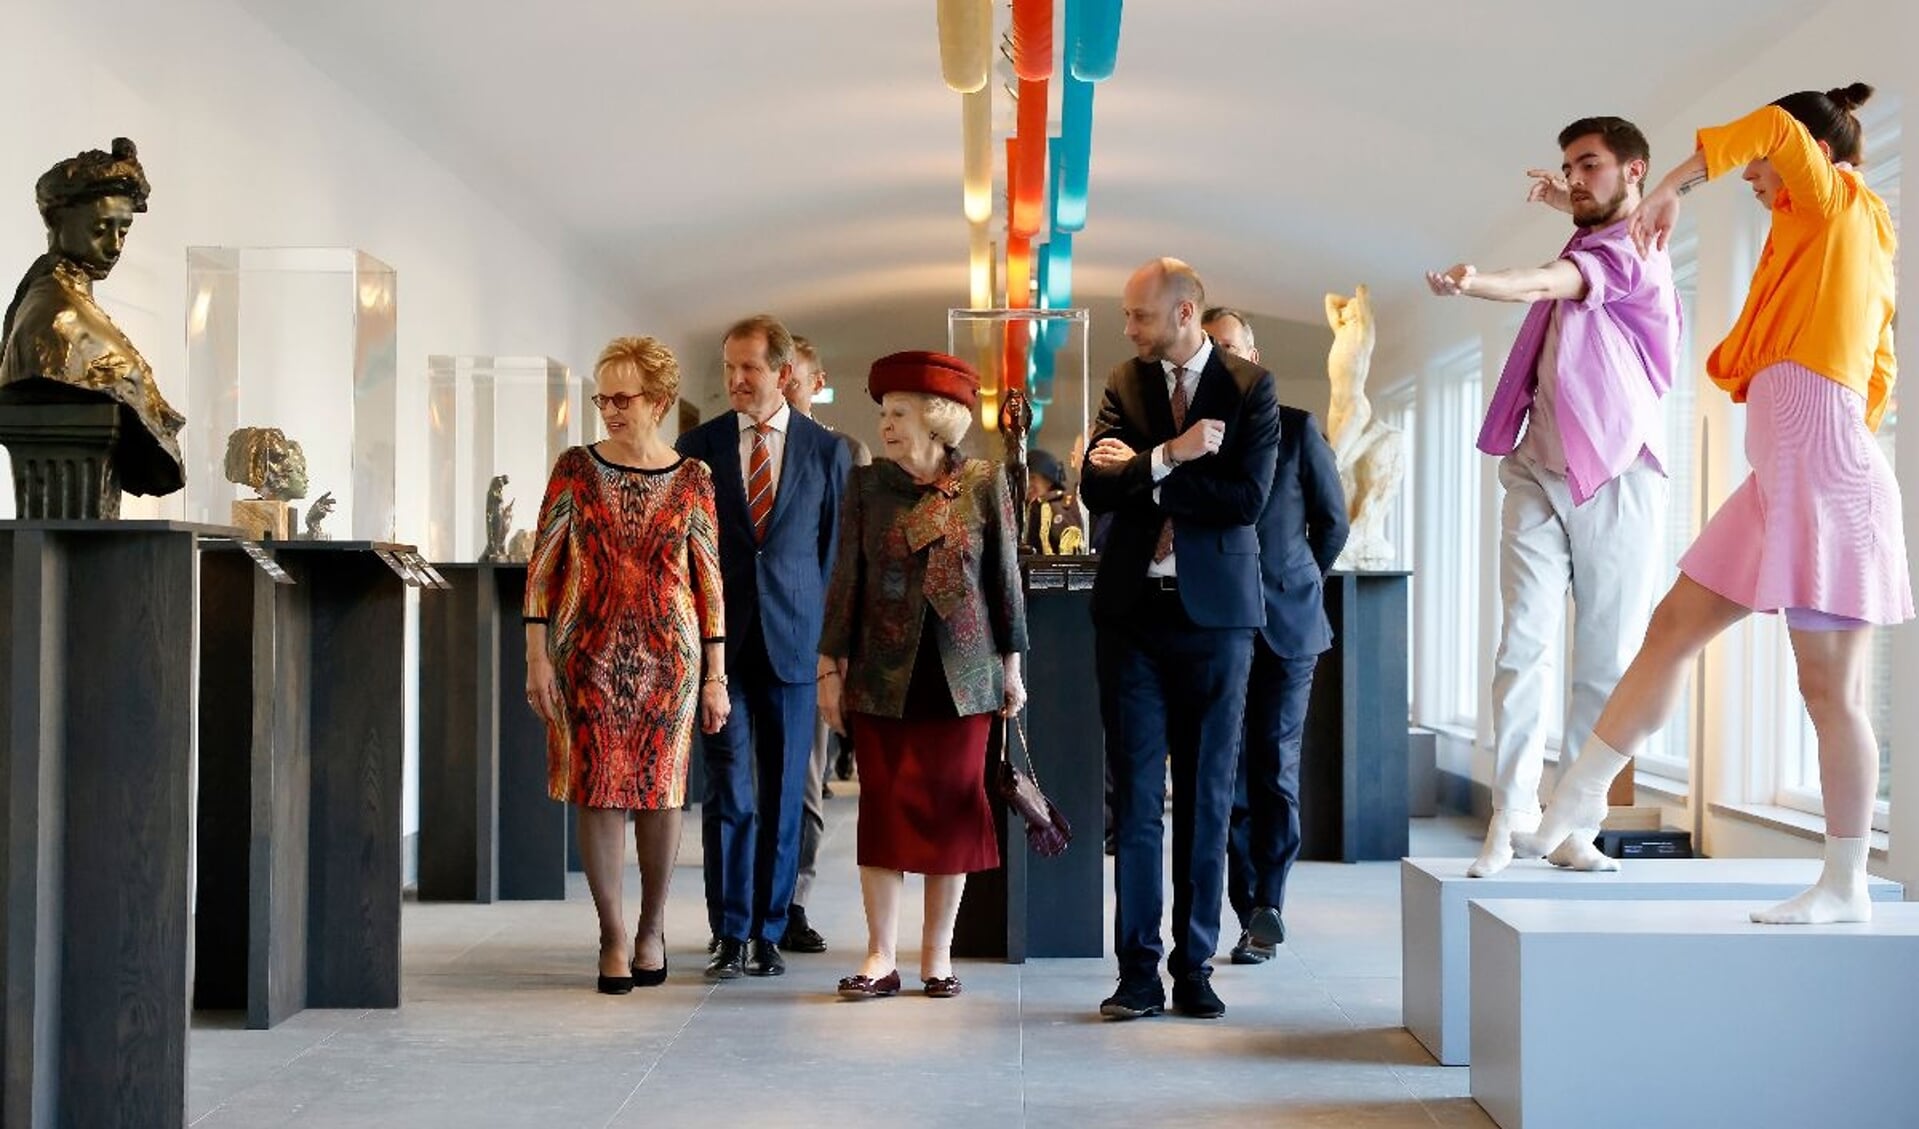 Els Blokker, Jan Rudolph de Lorm, Prinses Beatrix en Evert van Os in Singer Laren